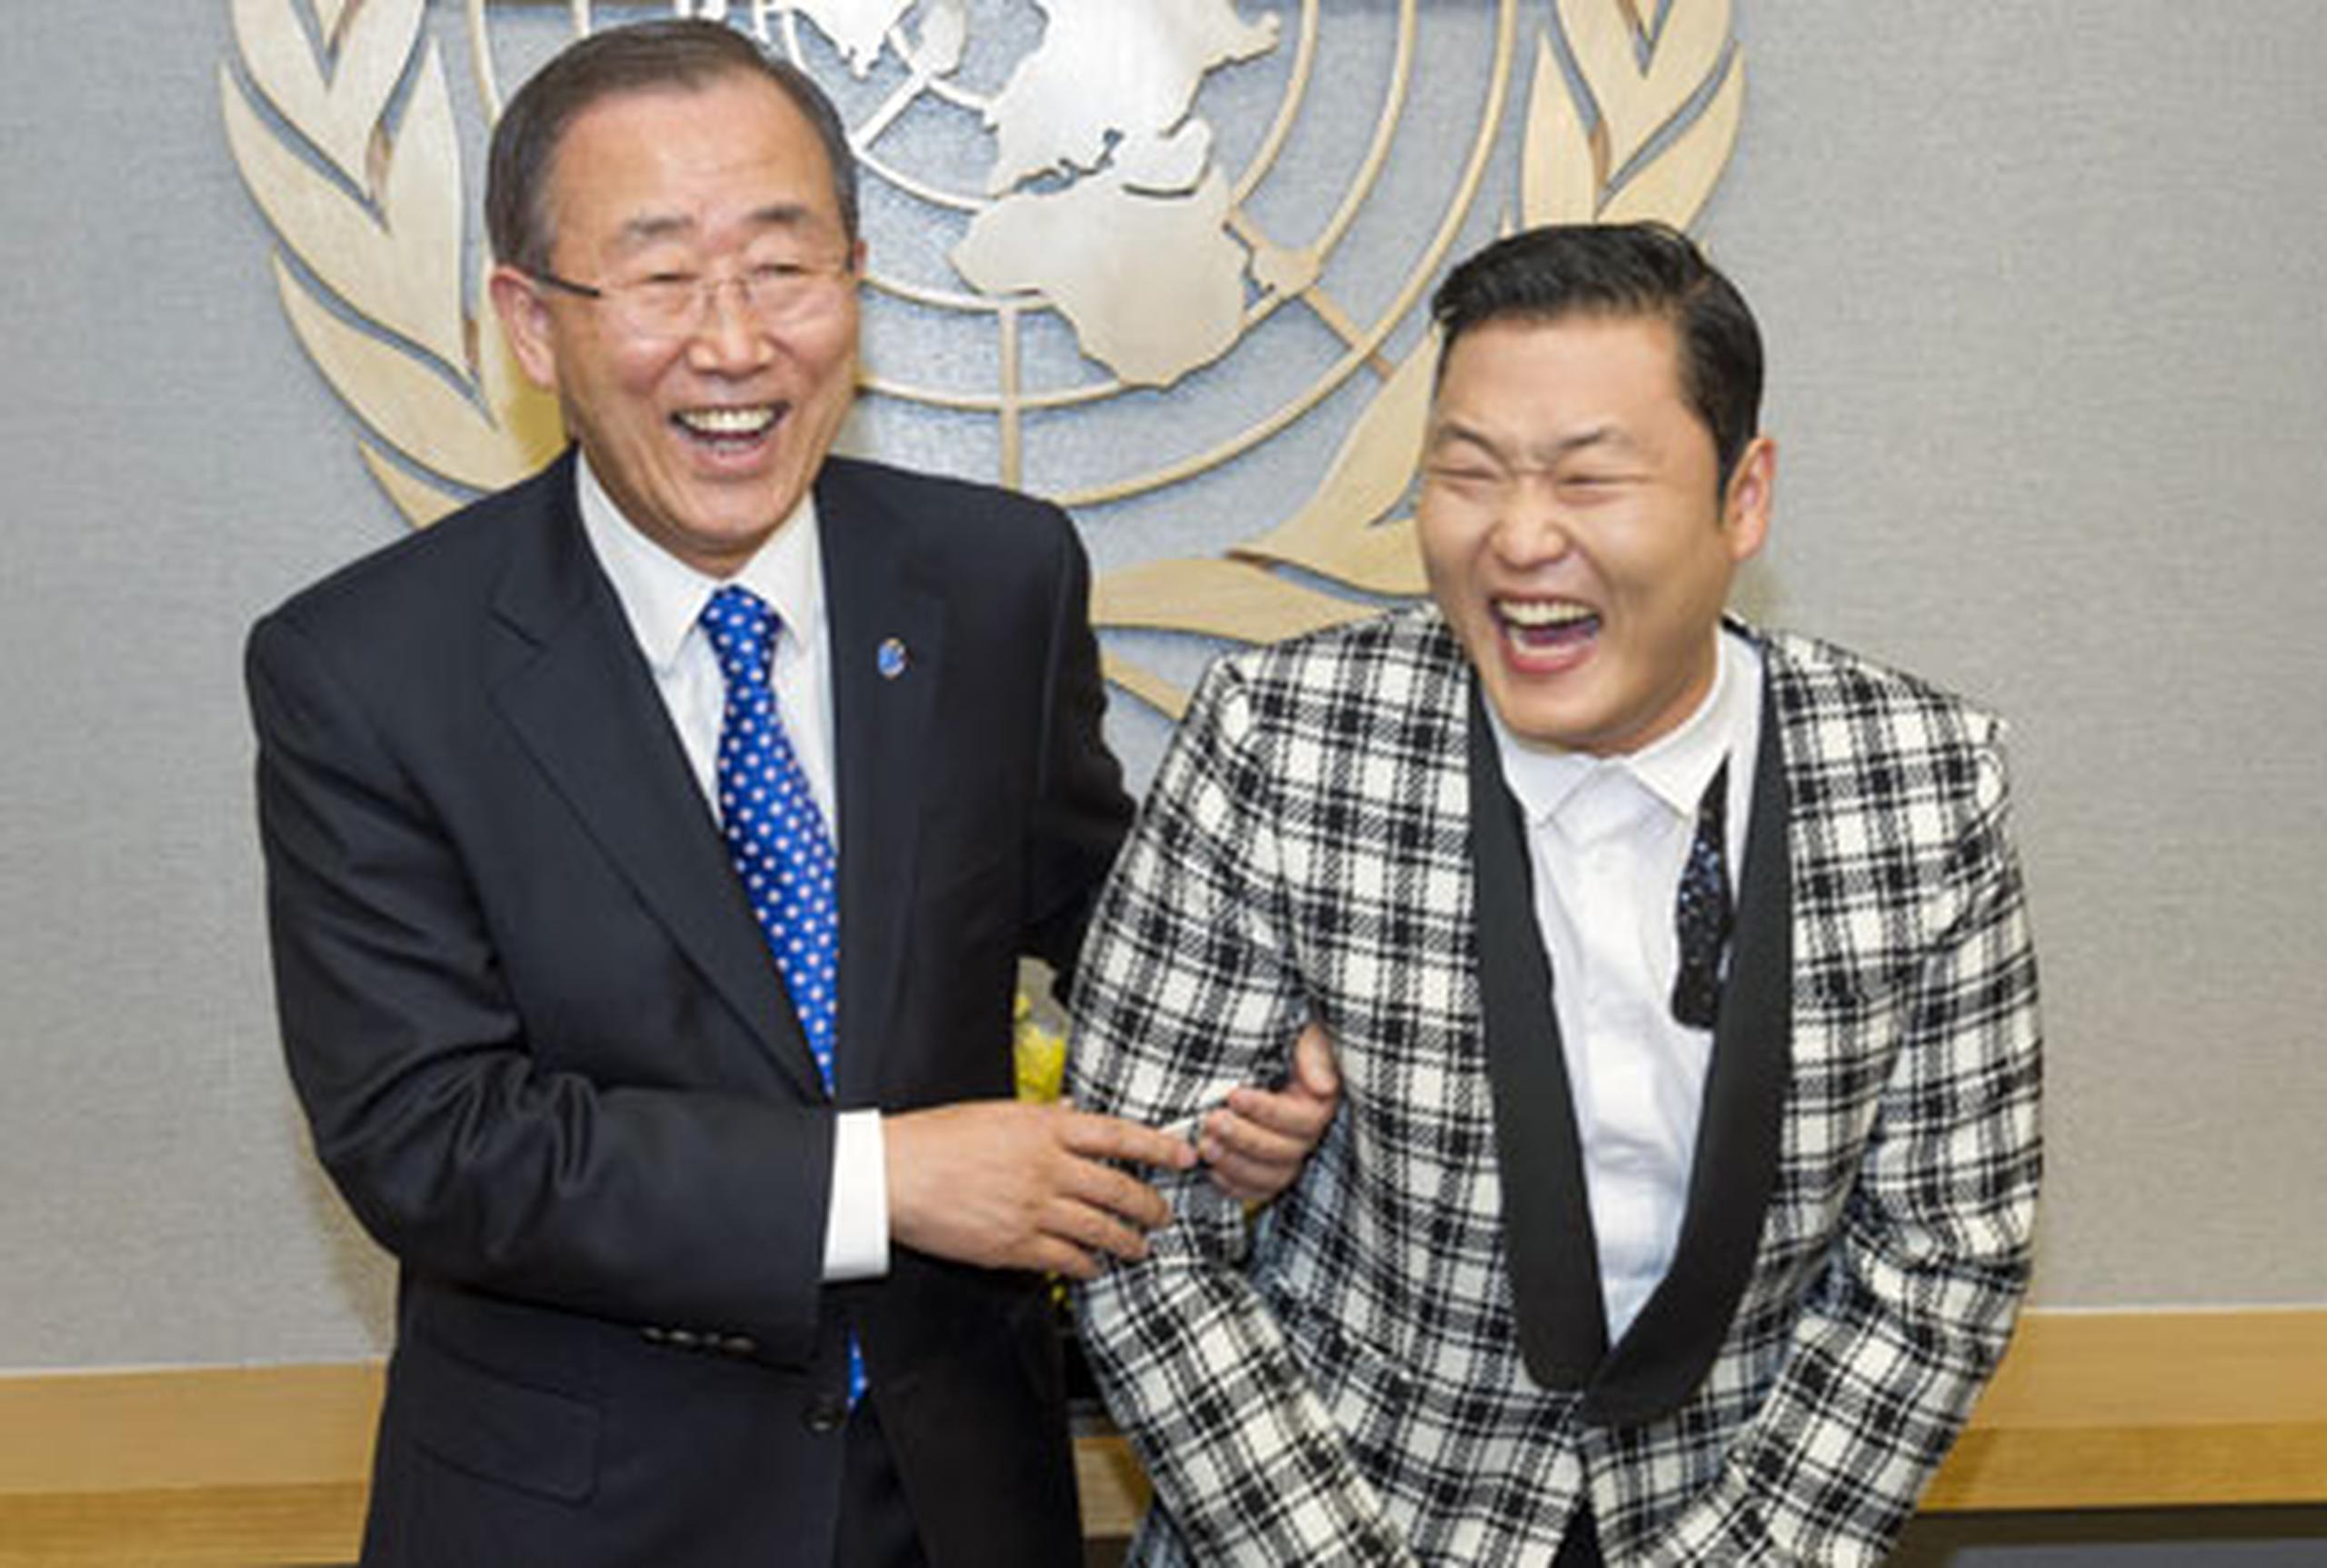 El secretario general de las Naciones Unidas Ban Ki-moon dice que está celoso del rapero surcoreano PSY.(AP /United Nations, Eskinder Debebe)